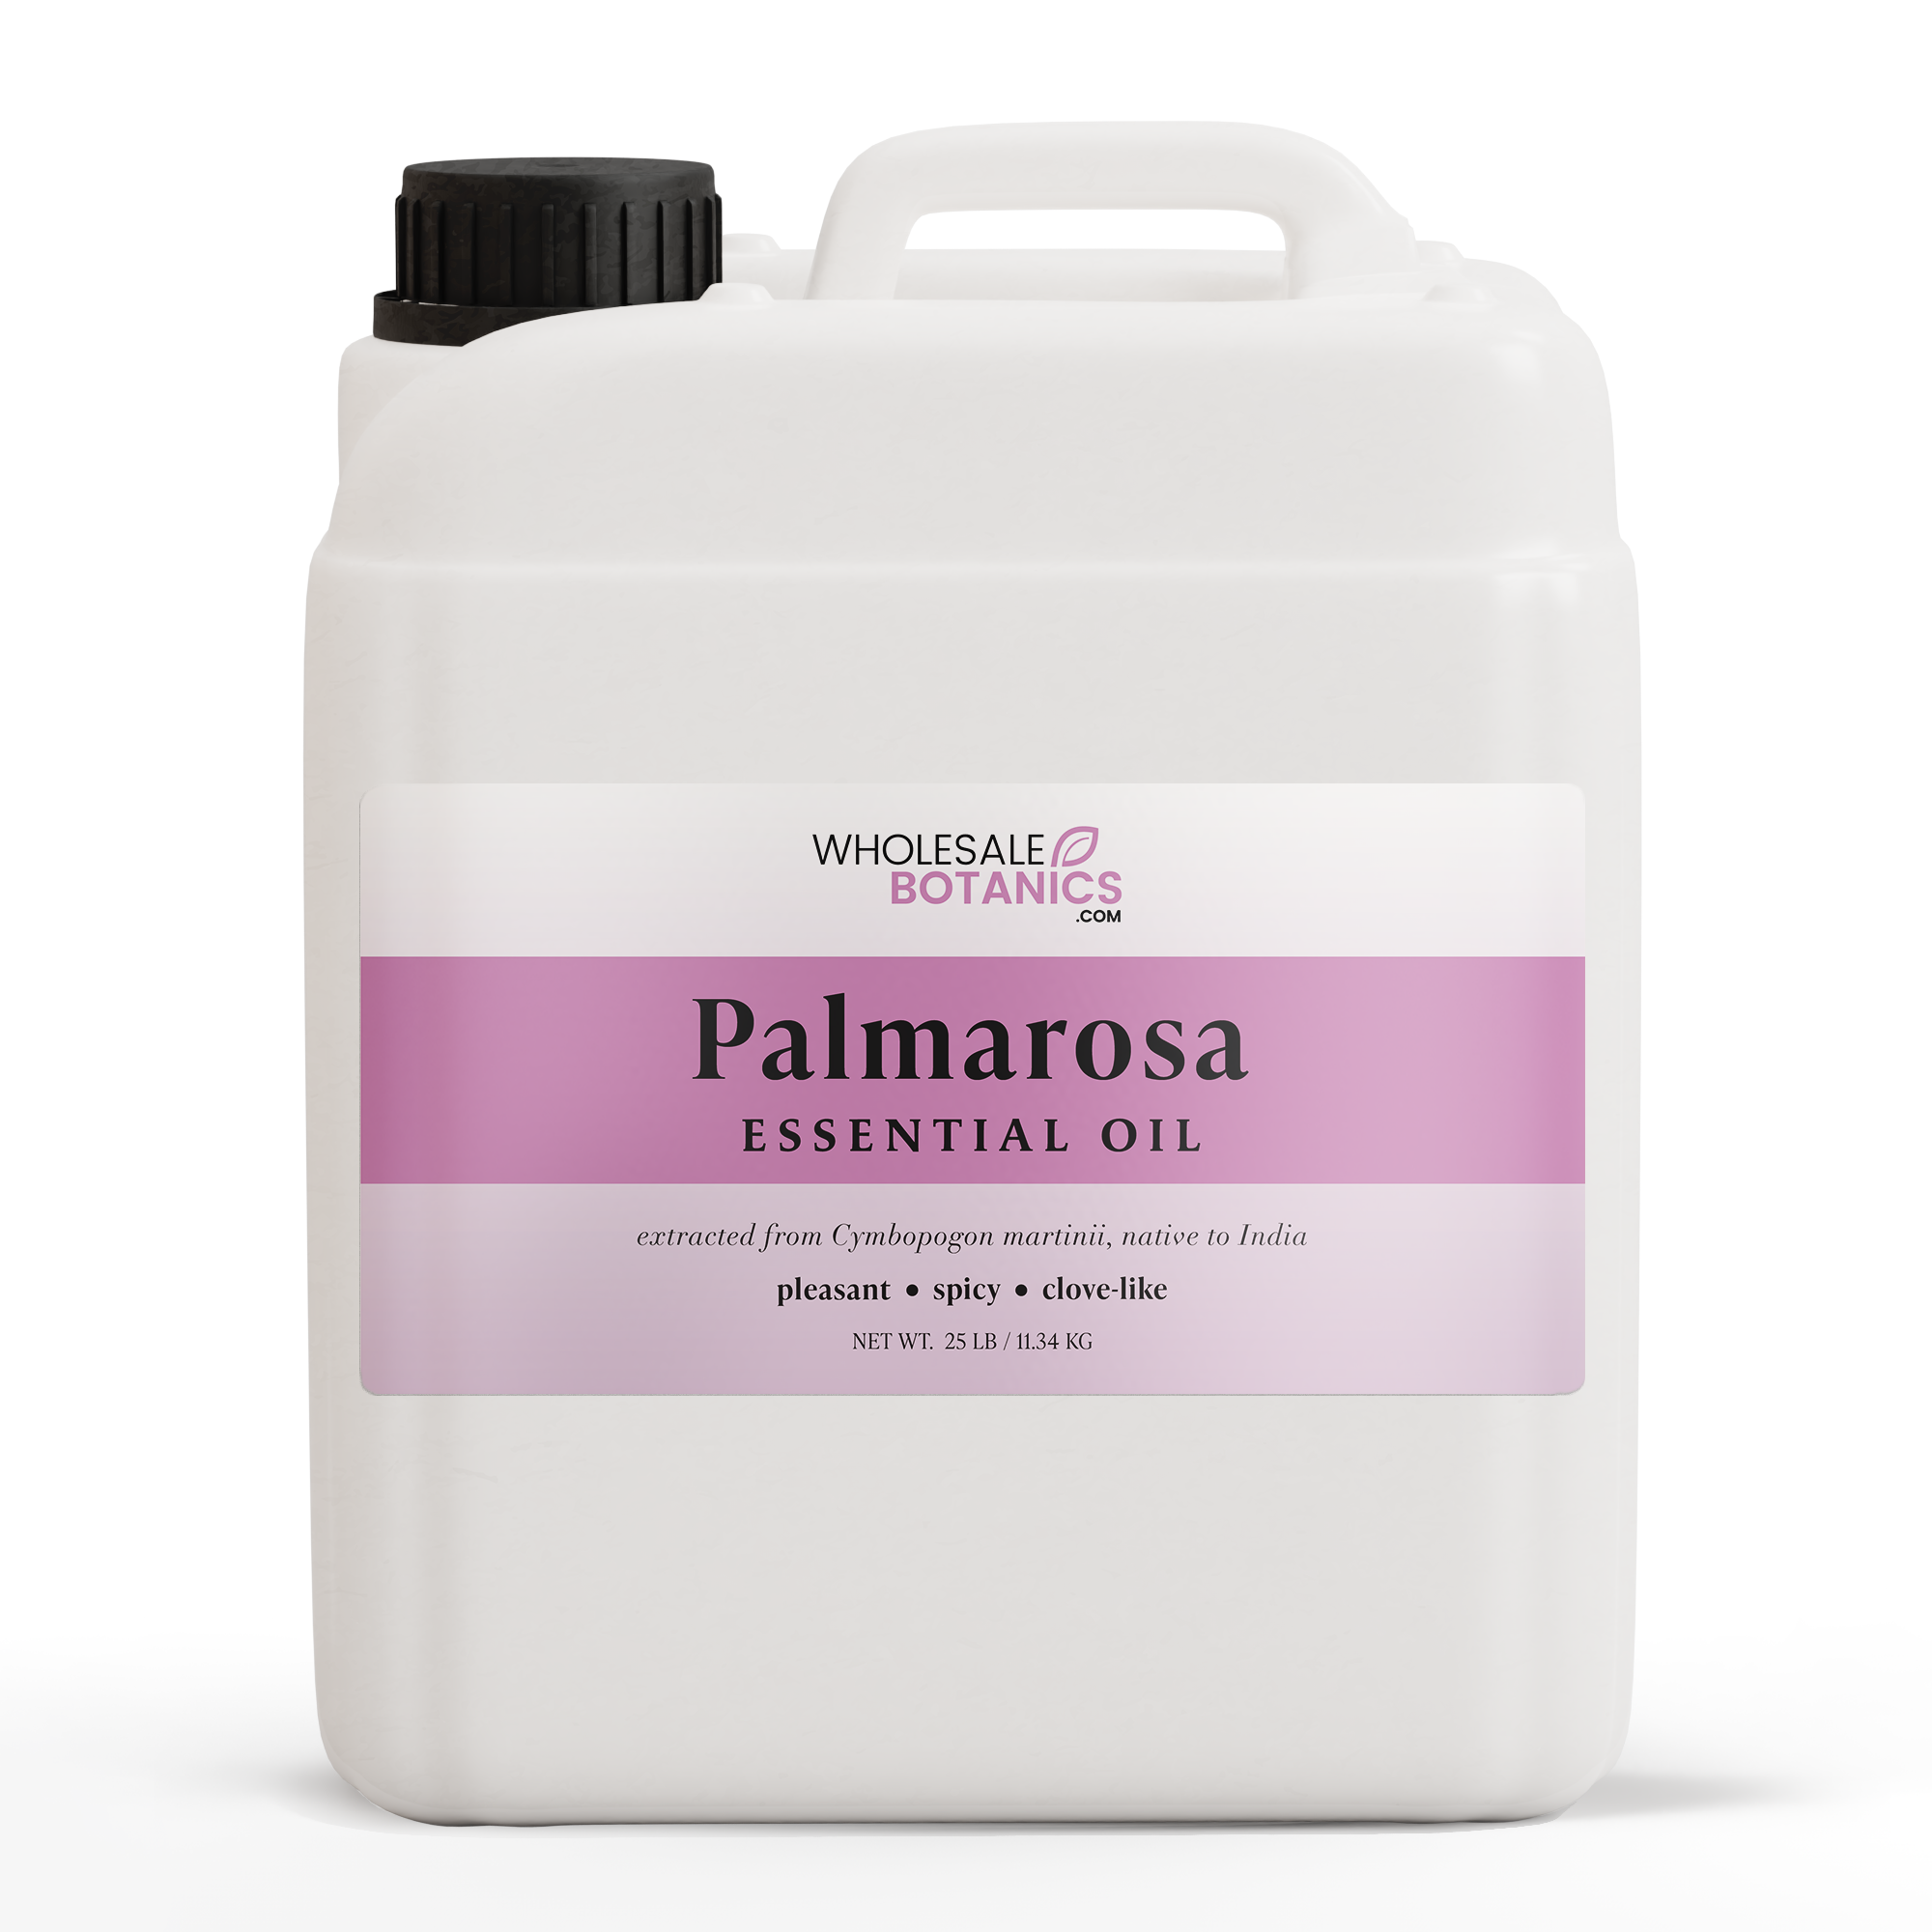 Palmarosa Essential Oil — Wholesale Botanics